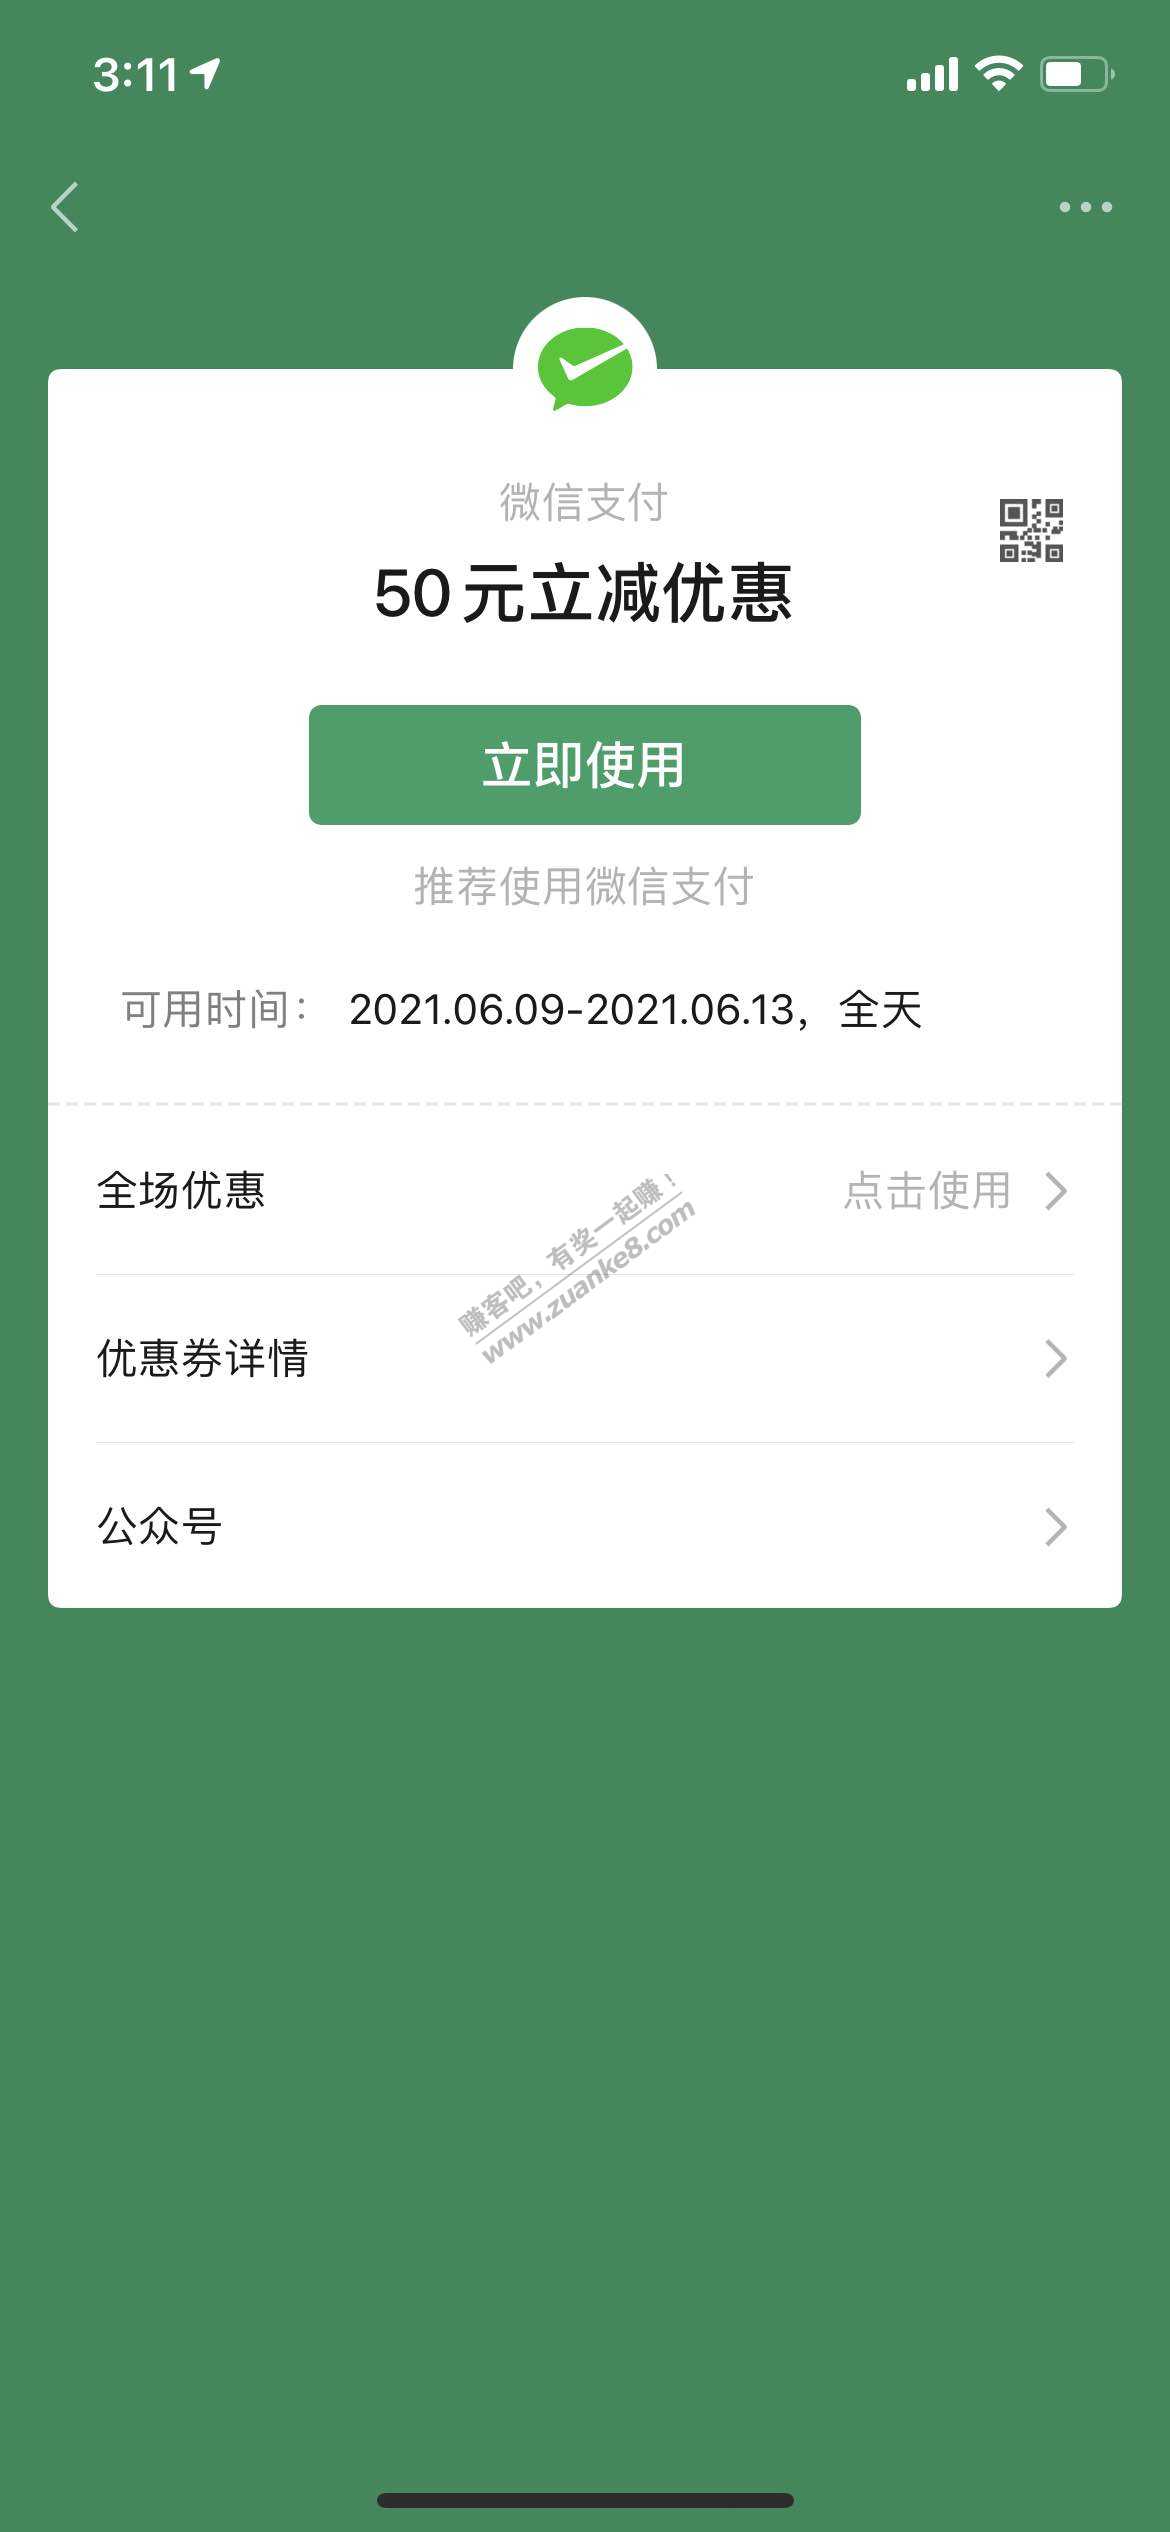 V.x搜索特权生活馆进去看一会送50立减金-惠小助(52huixz.com)